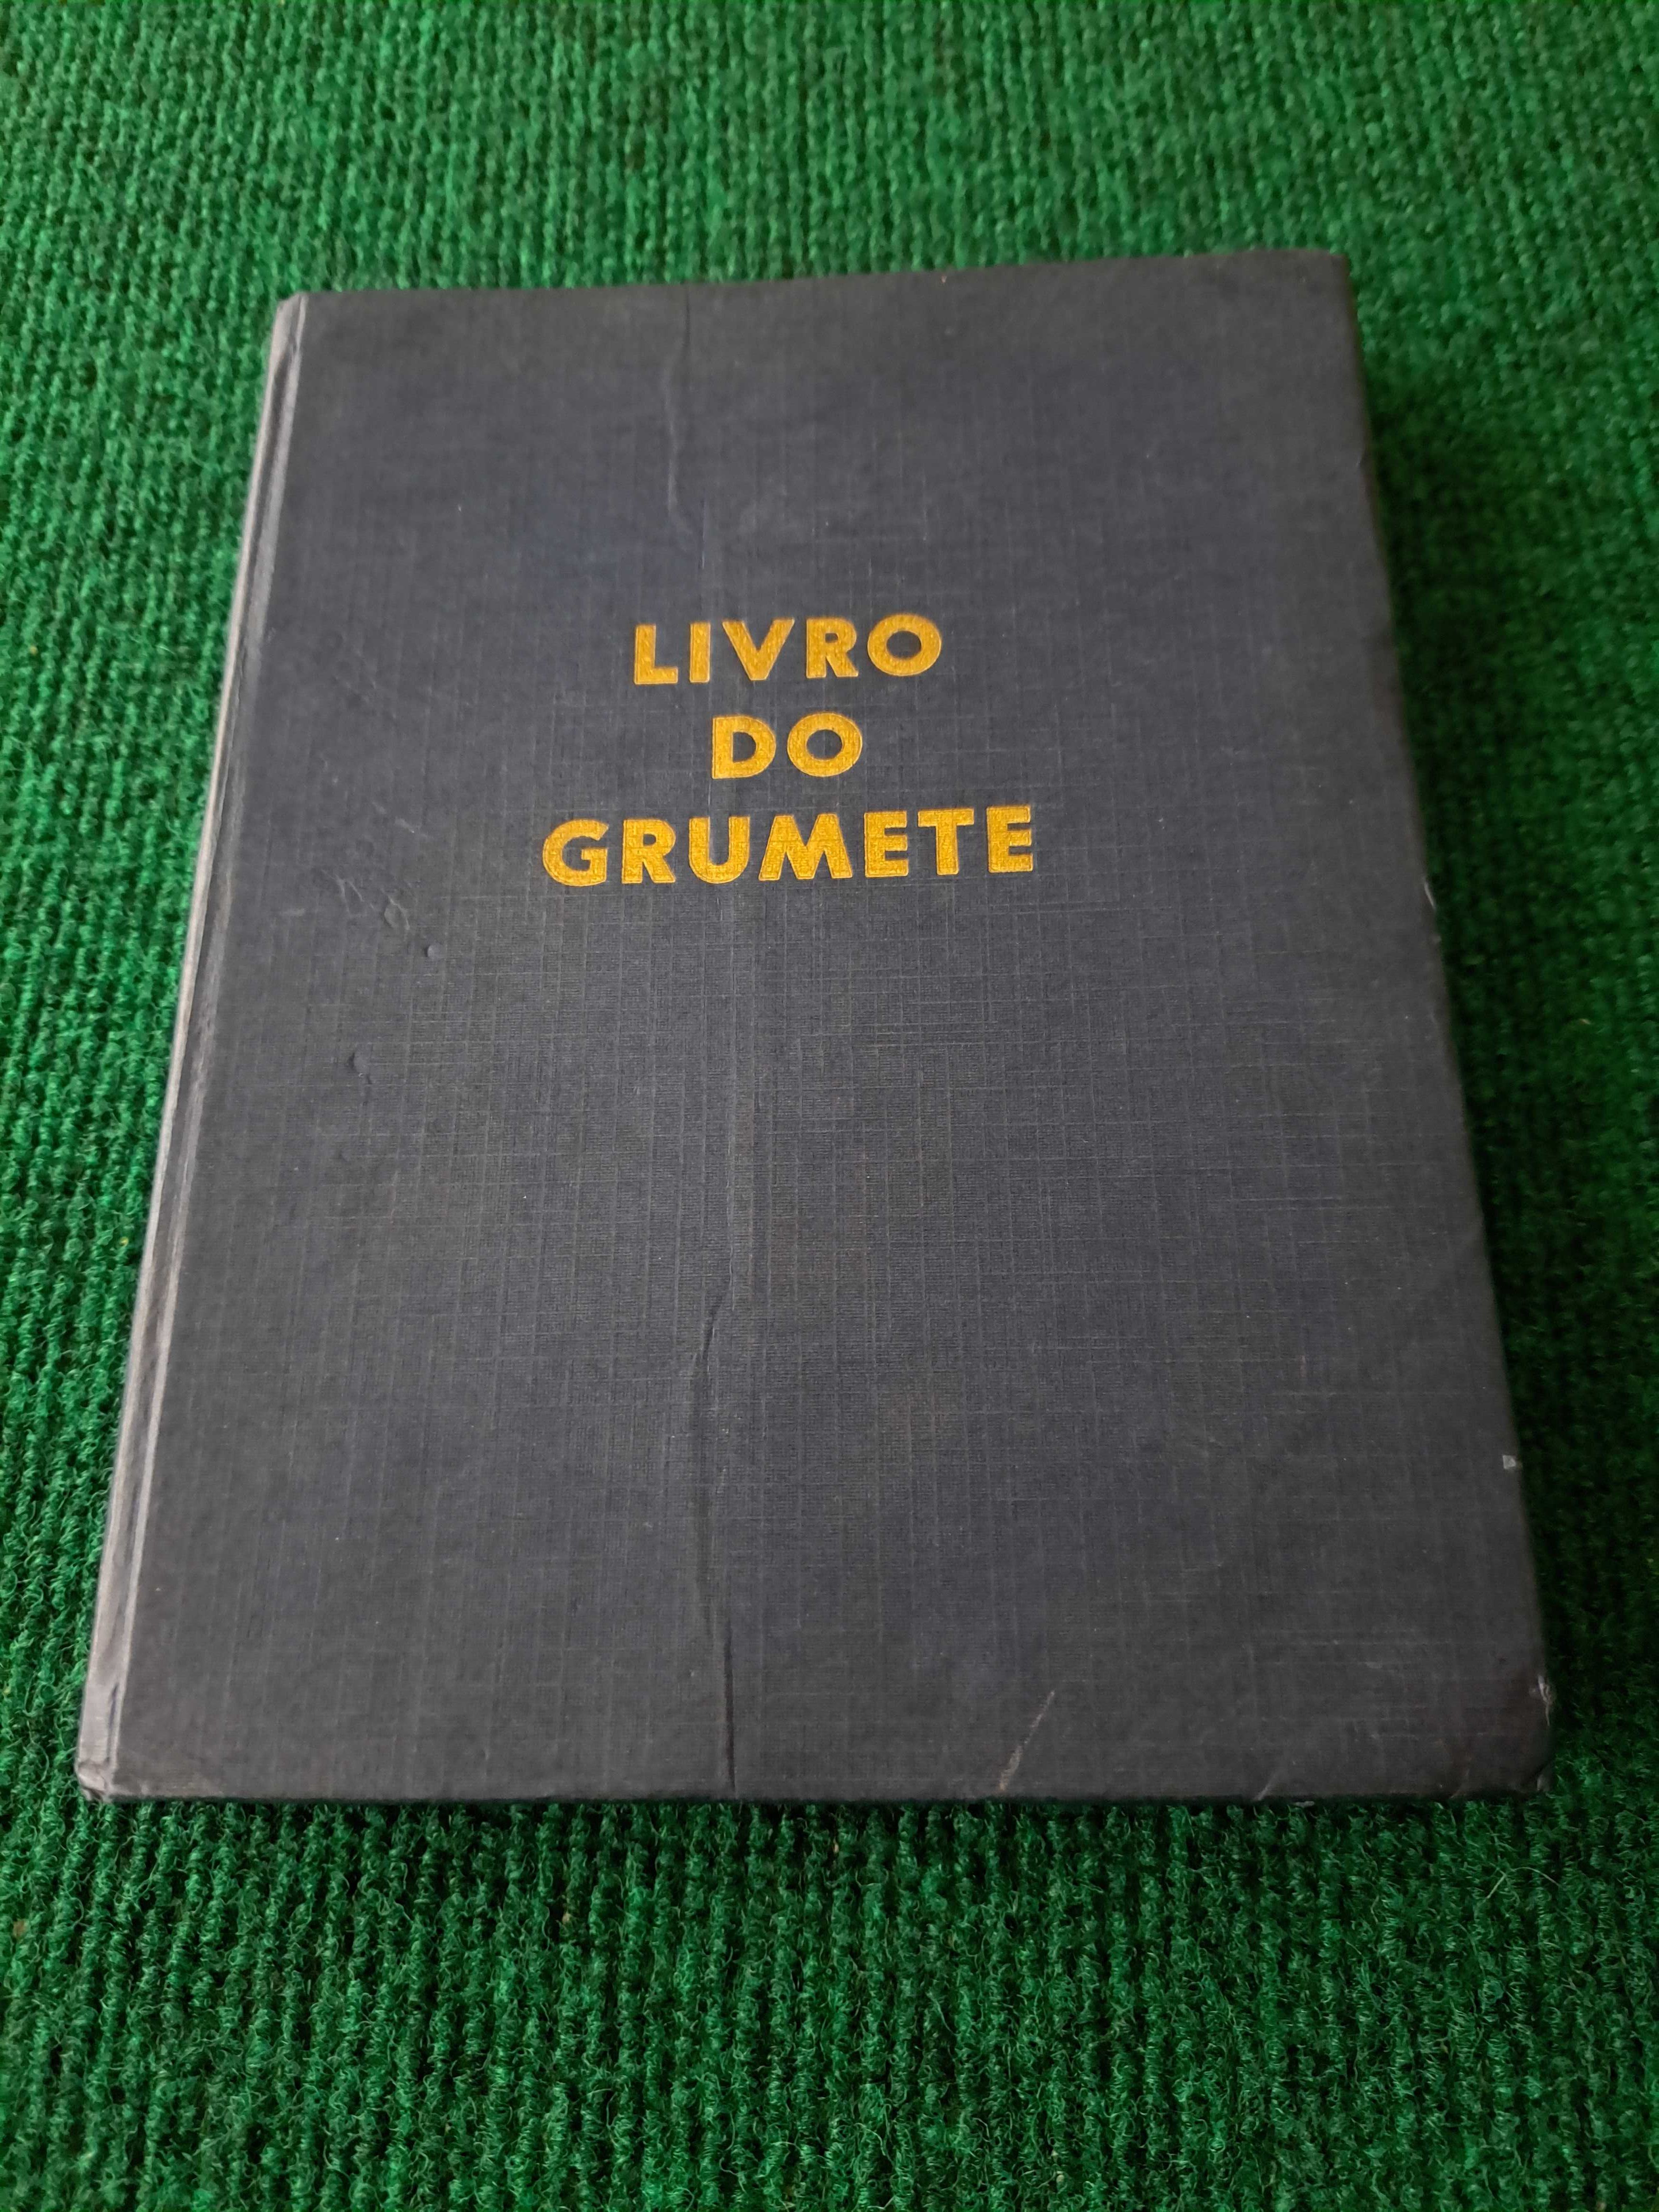 O Livro do Grumete - 3.° Edição - 1954